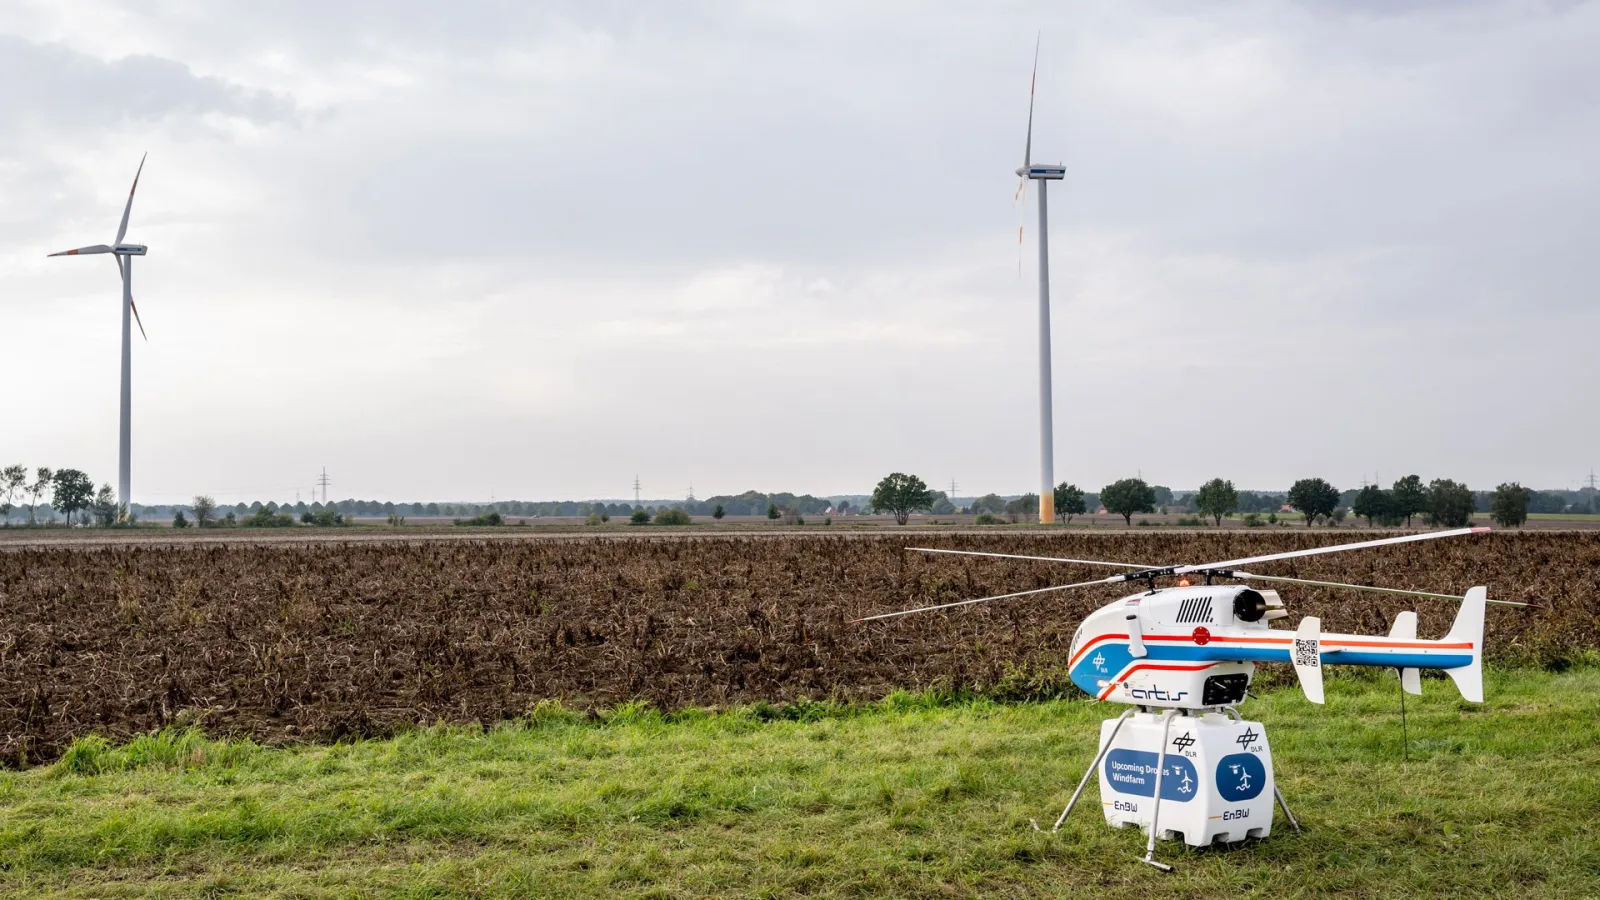 DLR-Hubschrauber superARTIS evor Windrädern. Die Flugversuche fanden im Rahmen des Projekts „Upcoming Drones Windfarm“ statt. 